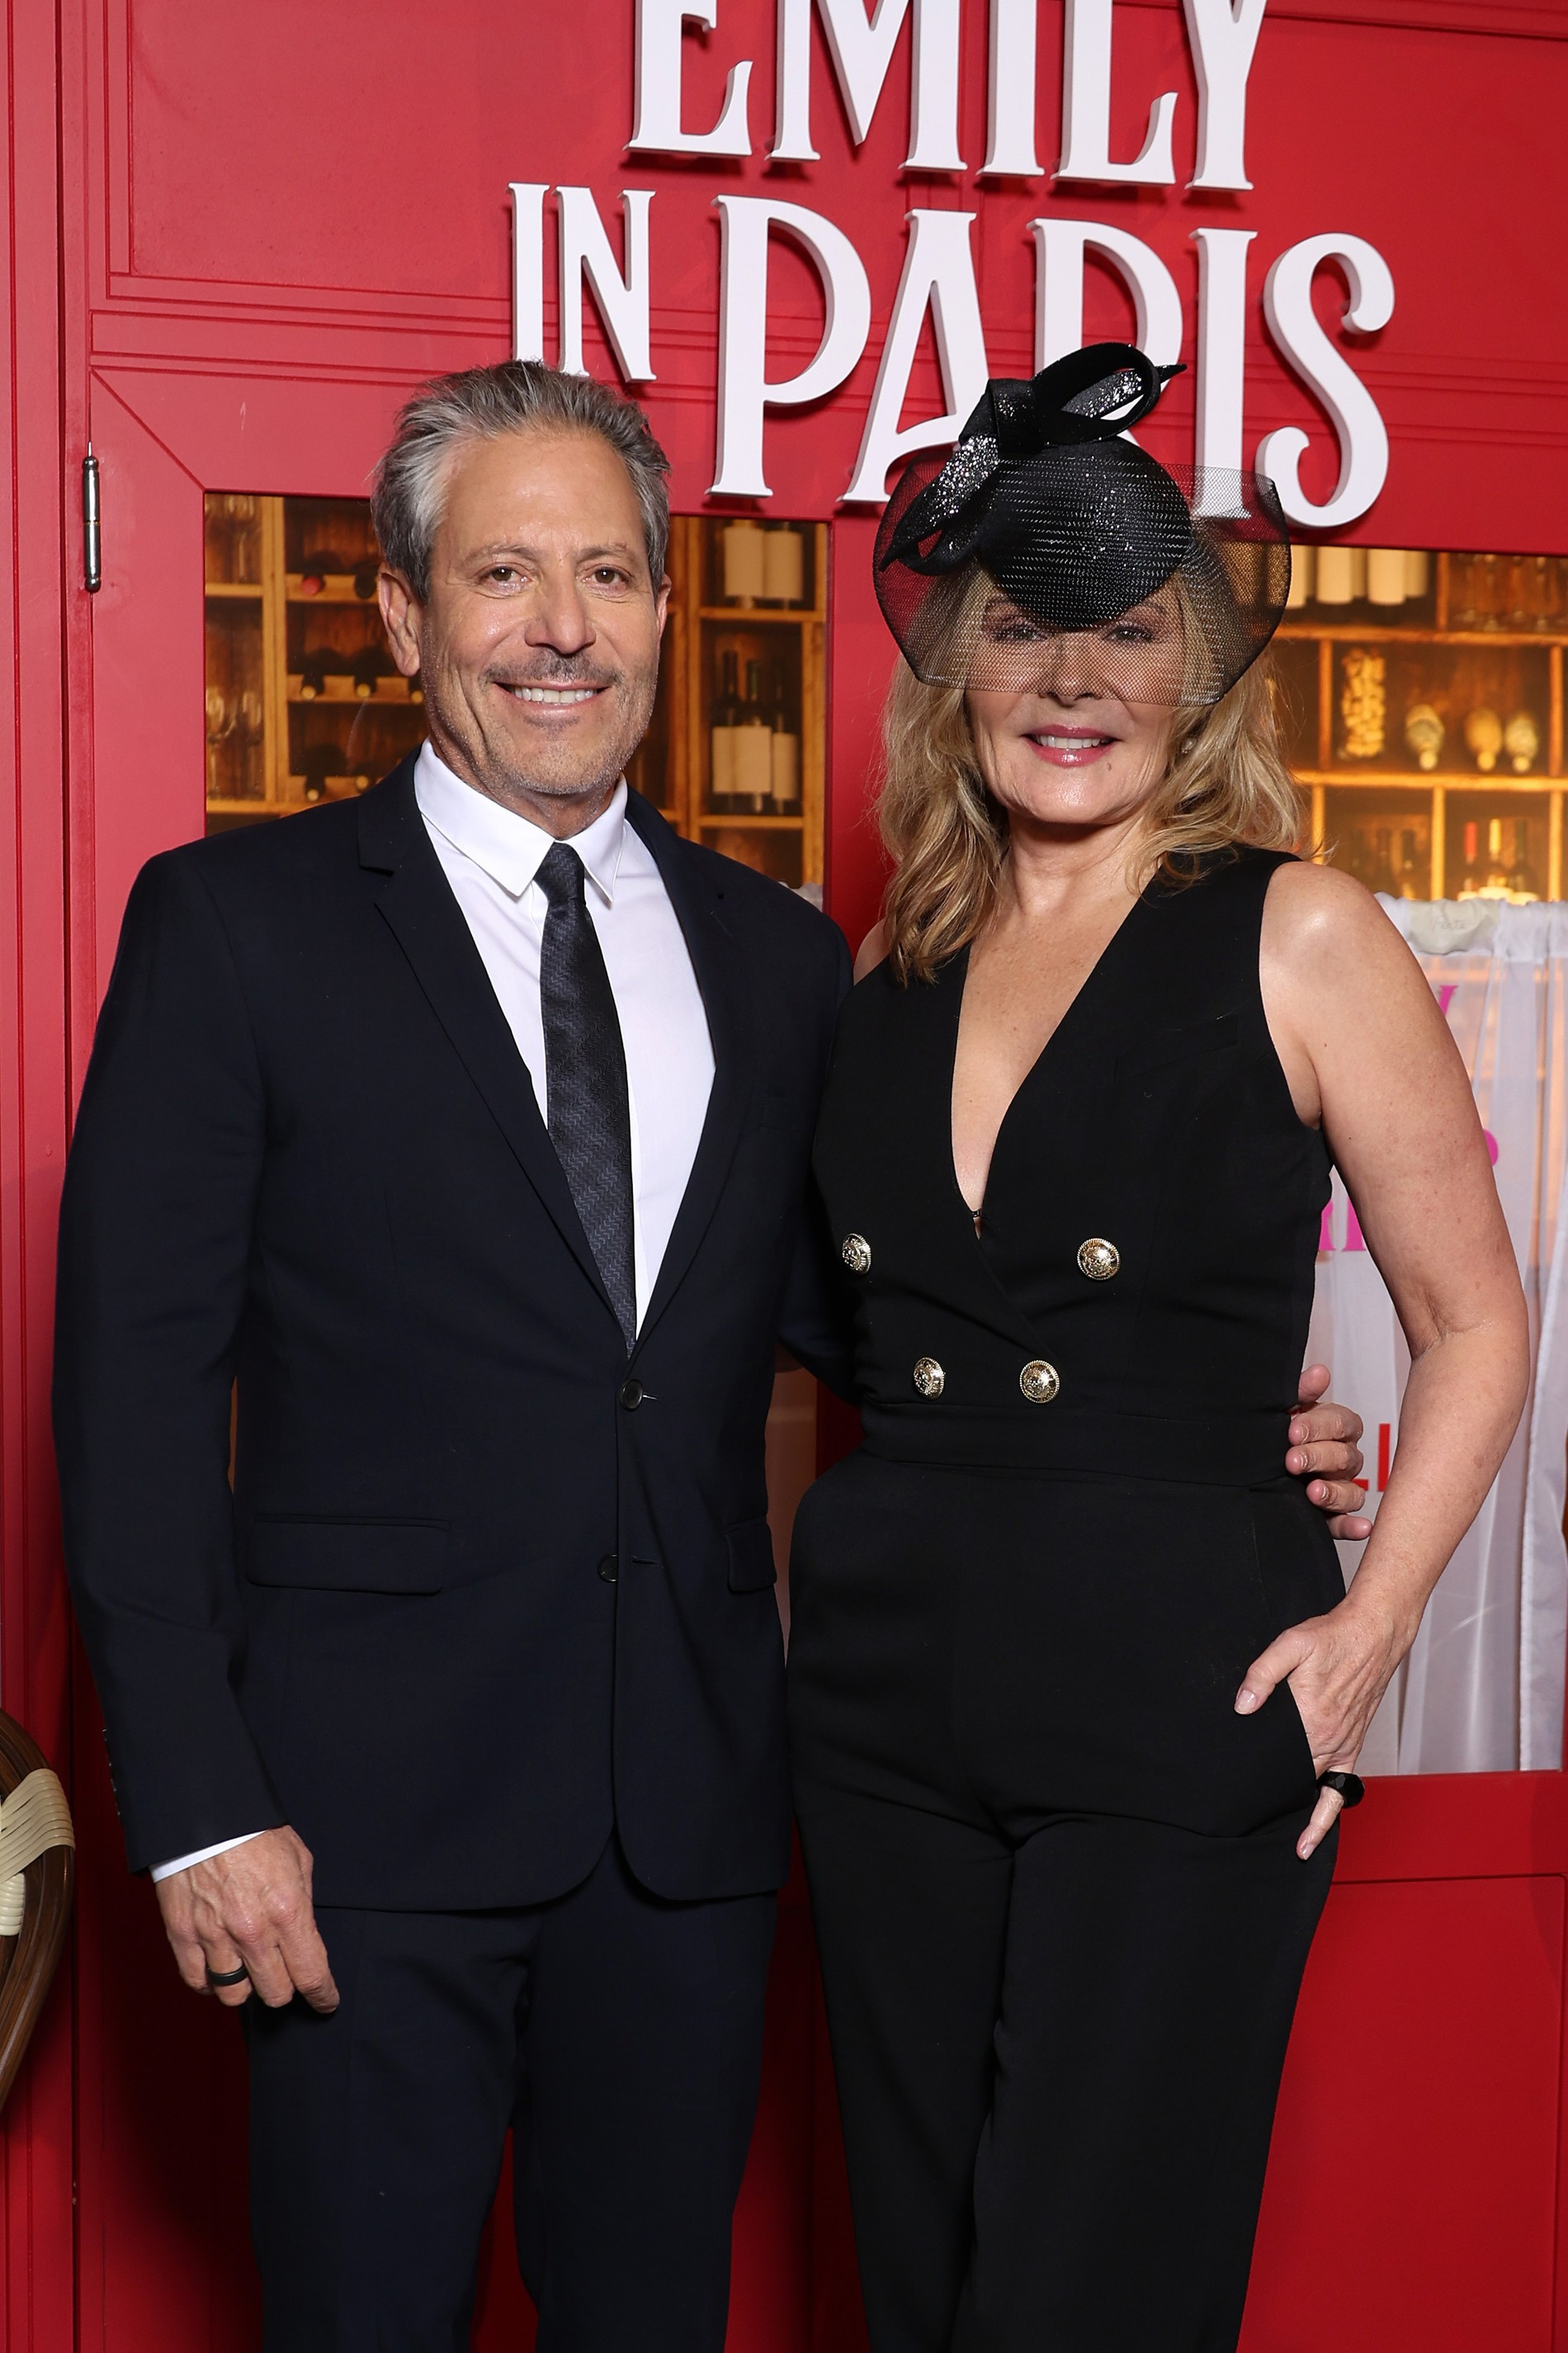 Даррен Стар и Ким Кэтролл на парижской премьере третьего сезона «Эмили в Париже»
Фото: Getty images